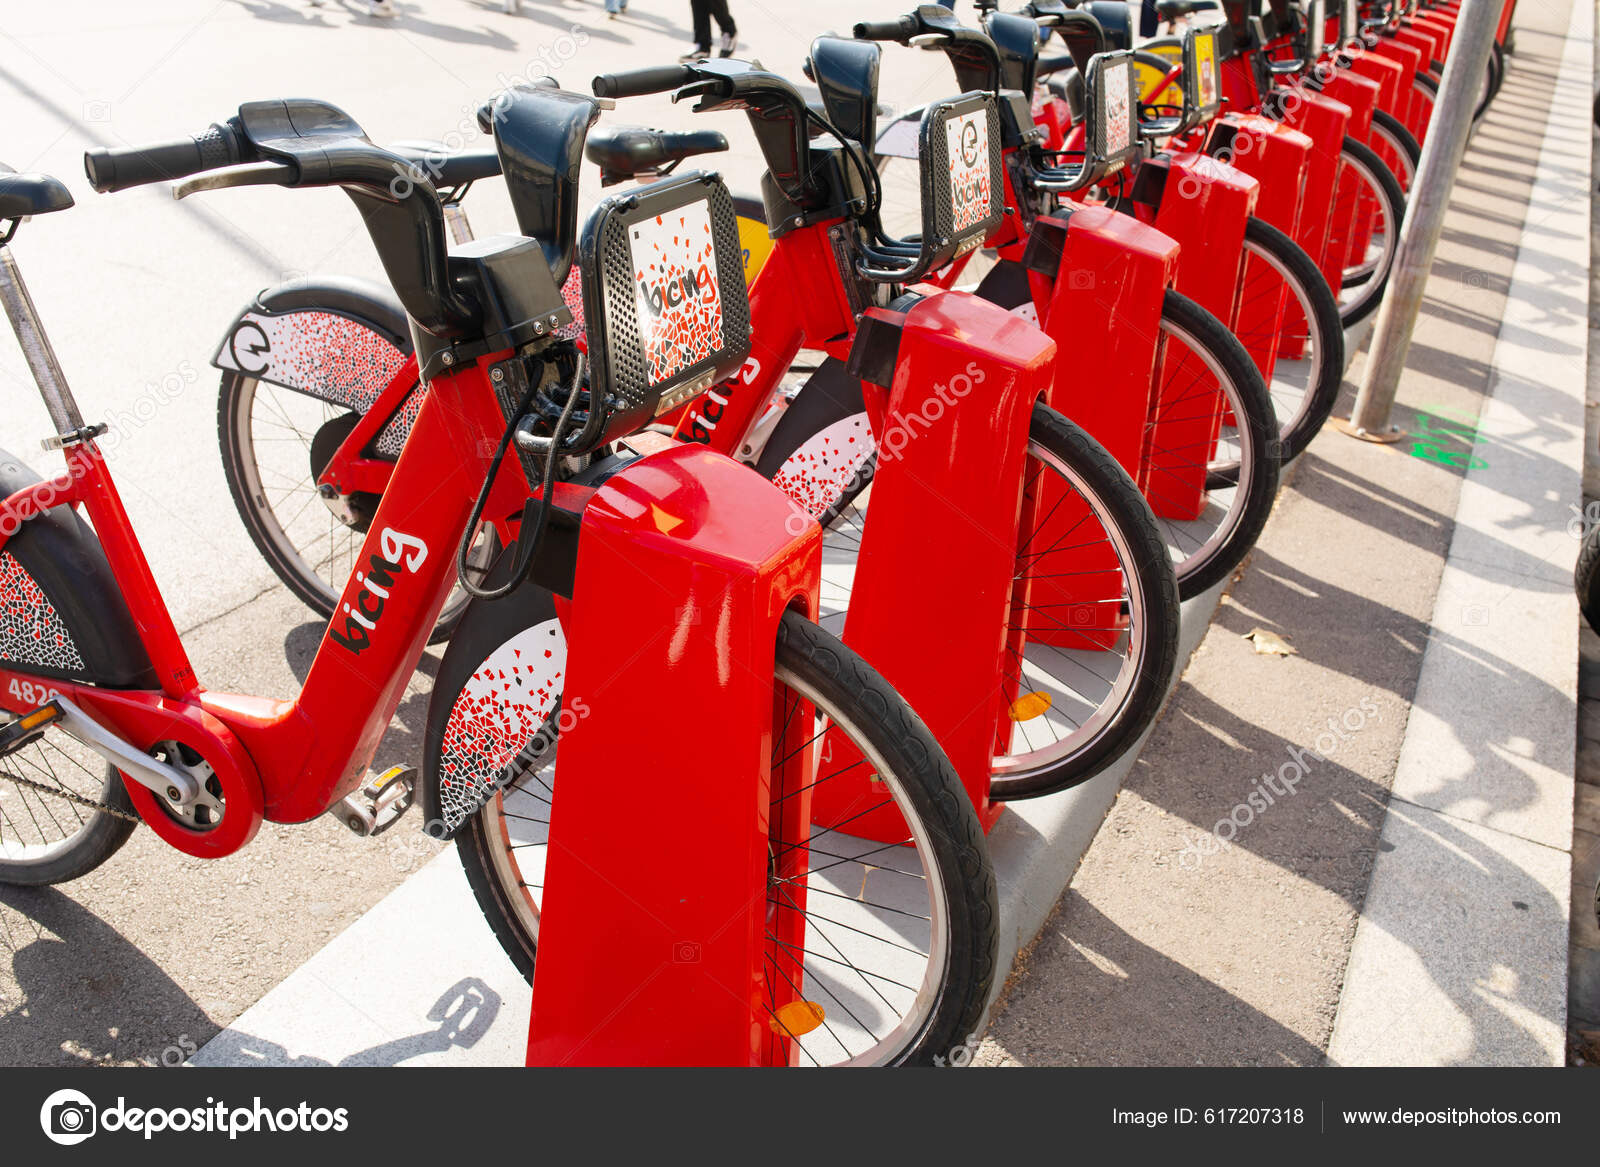 Barcelona Spanien Oktober 2022 Række Røde Cykler Cykelstativ Til Leje –  Redaktionelle stock-fotos © Lashkhidzetim #617207318